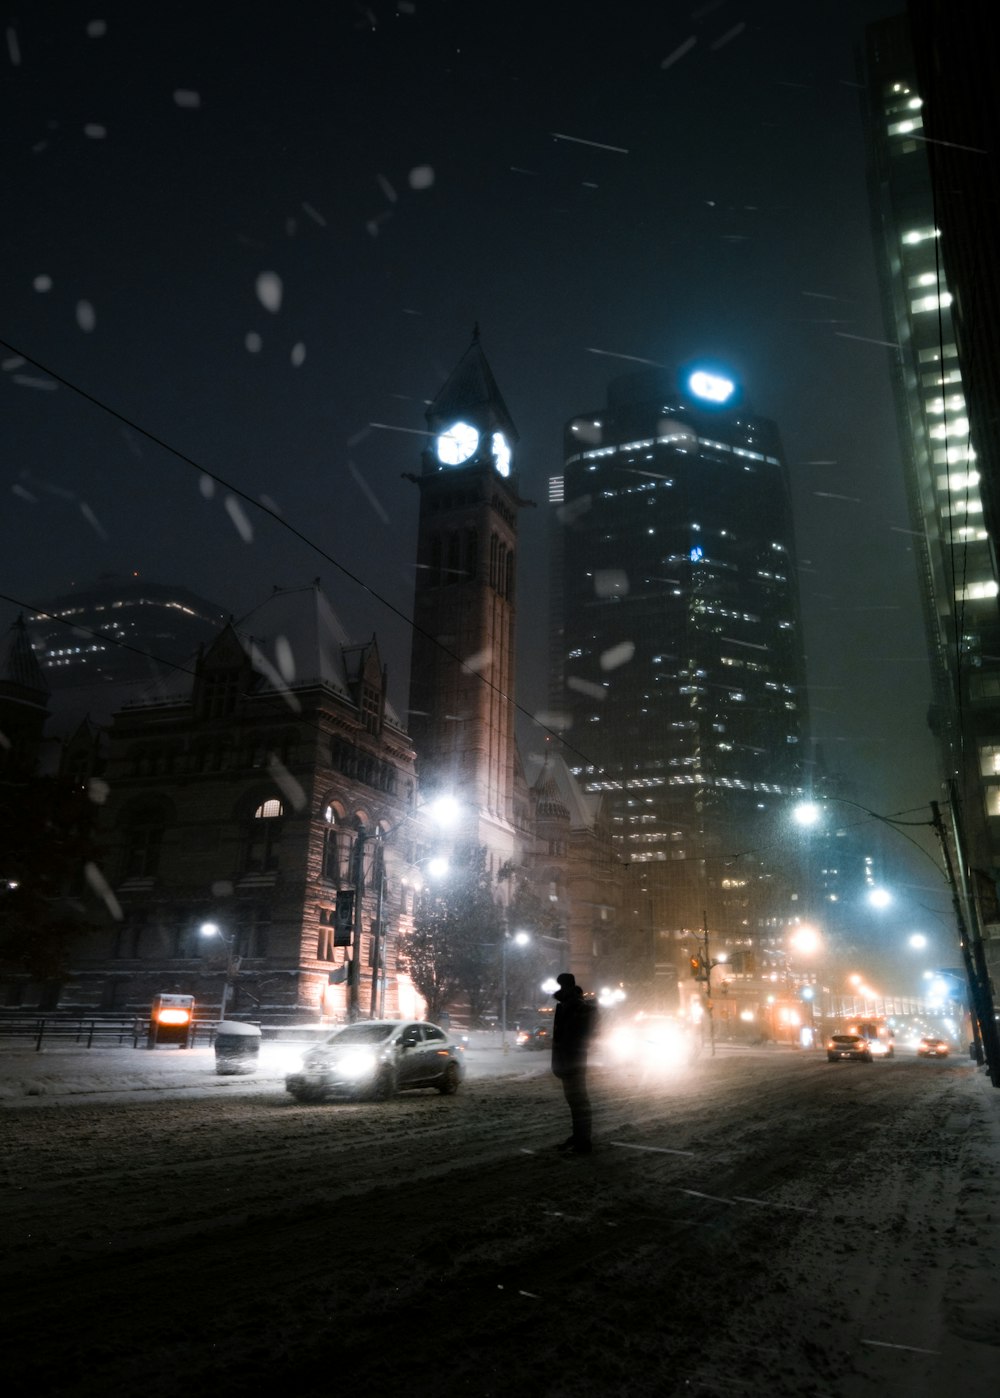 Una persona parada en una calle nevada por la noche